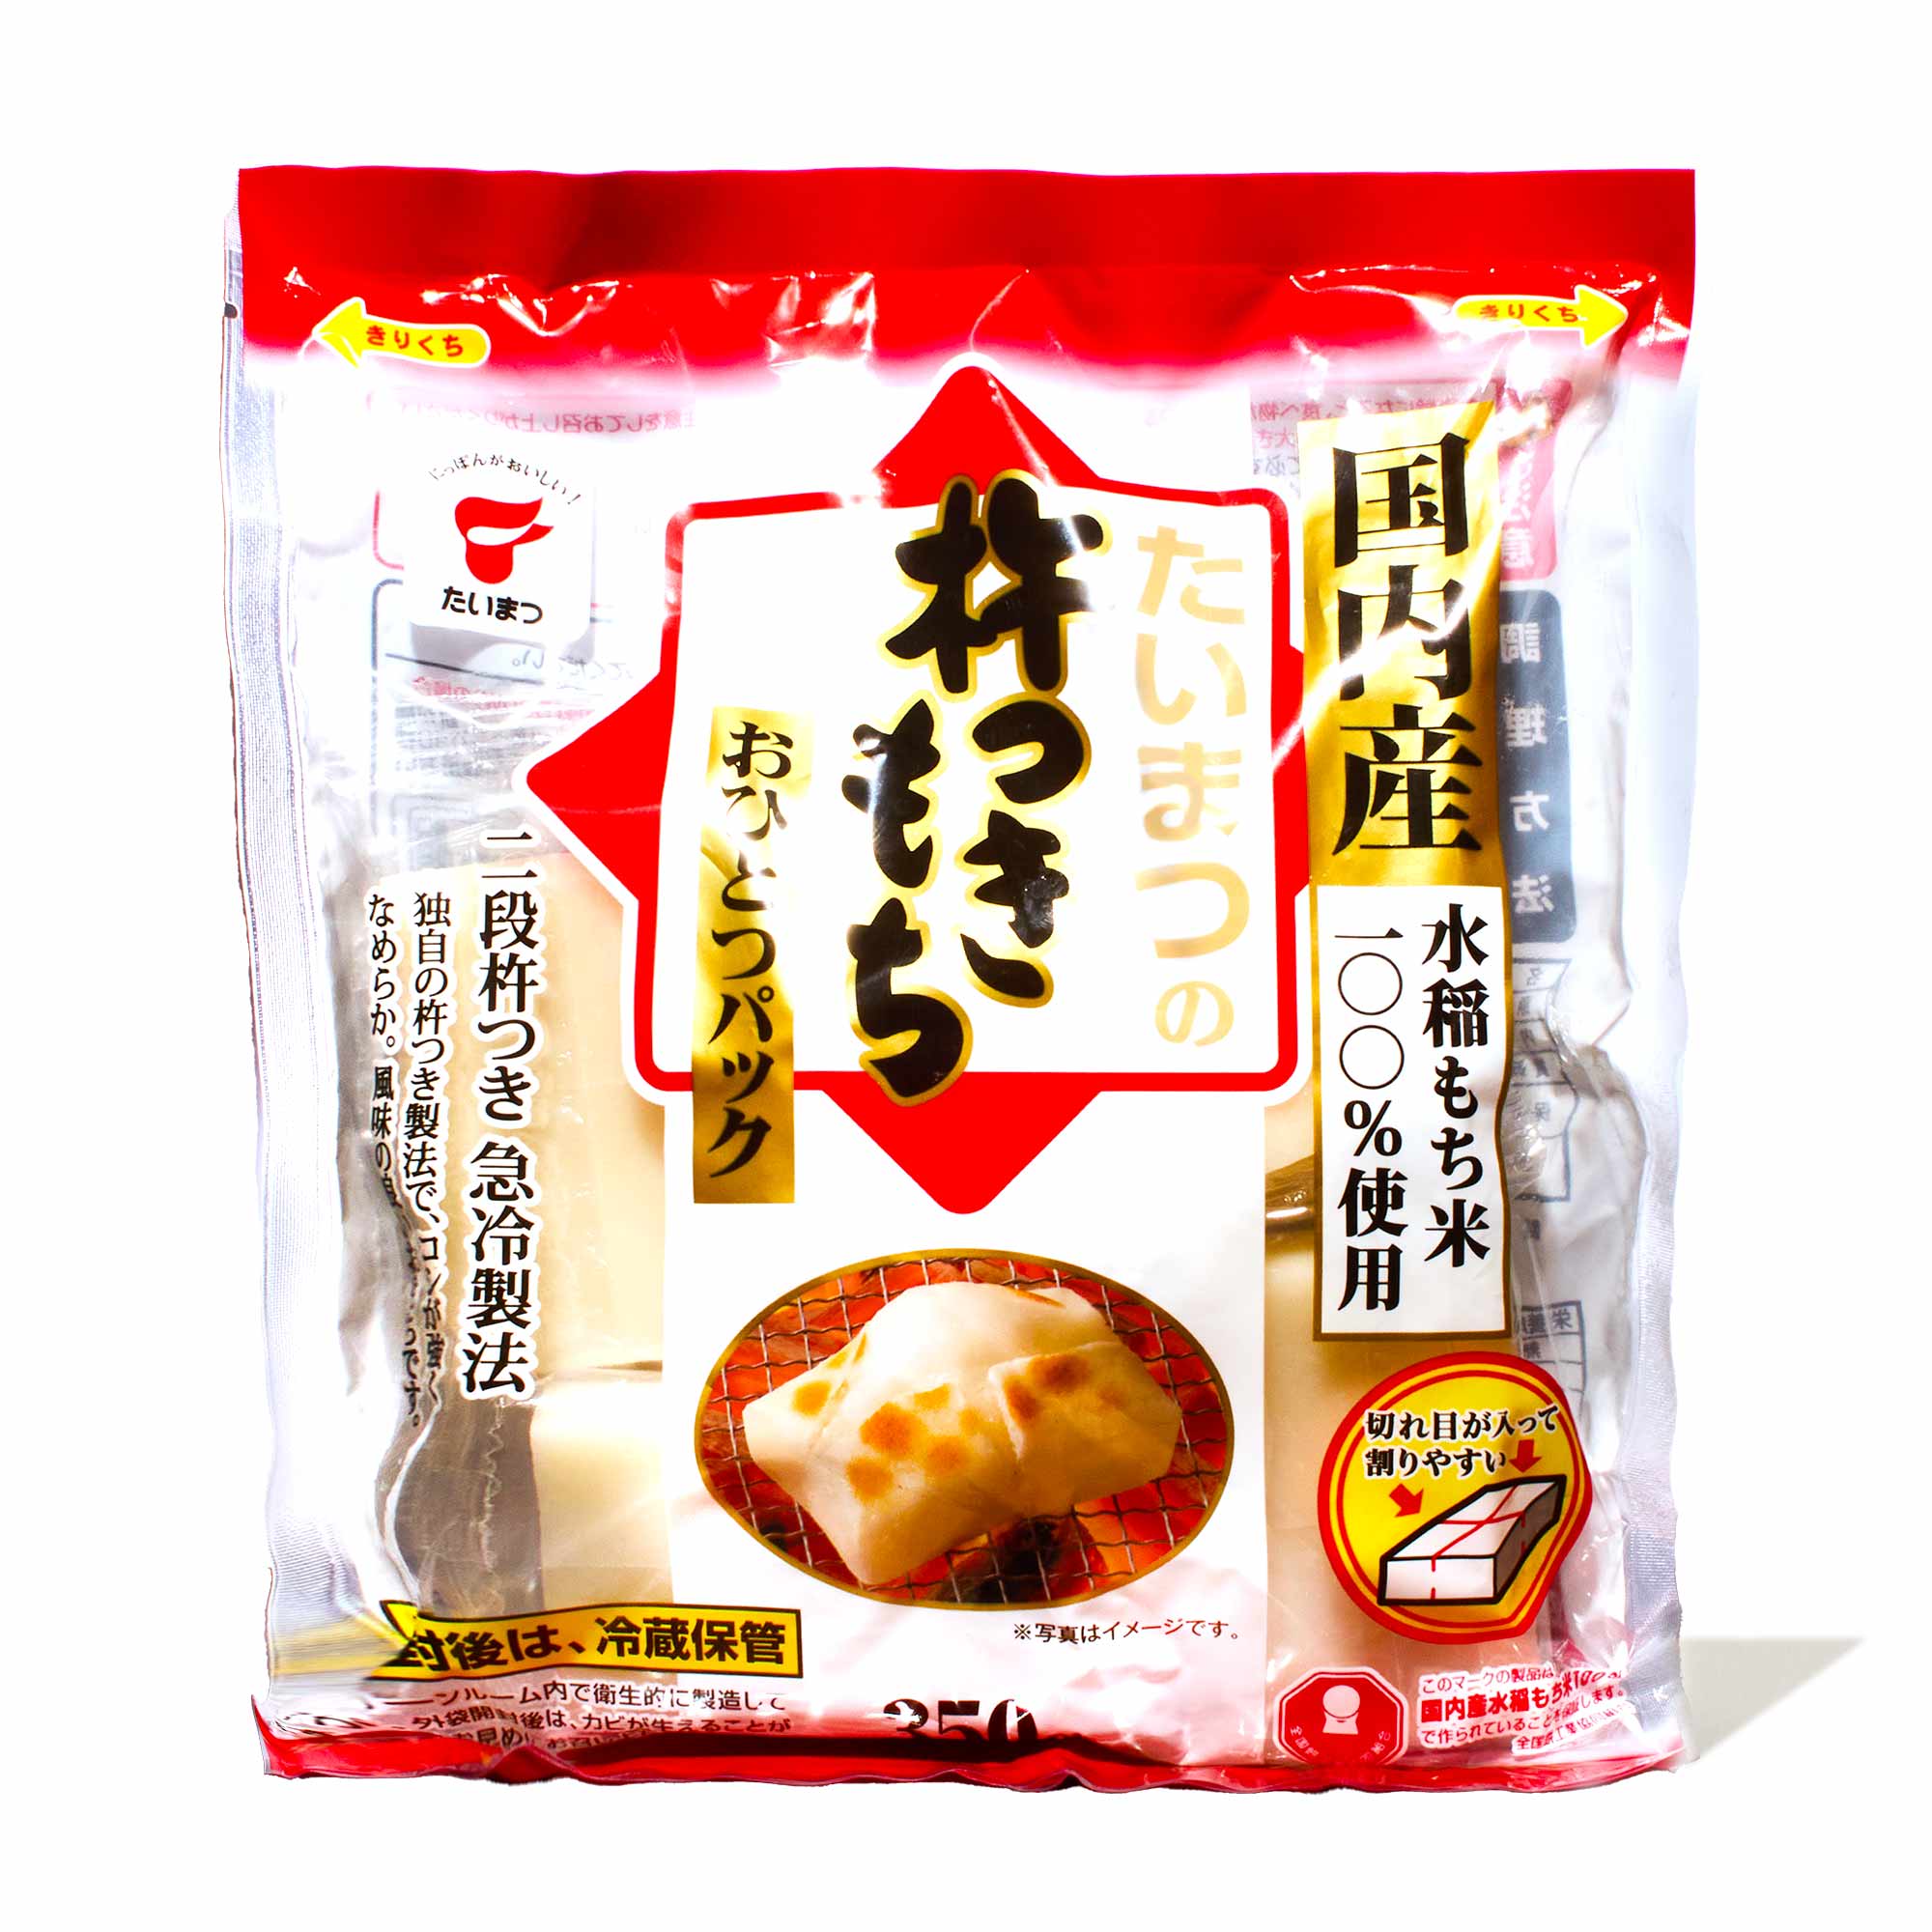 Yaki Mochi (Grilled Japanese Rice Cake) Recipe